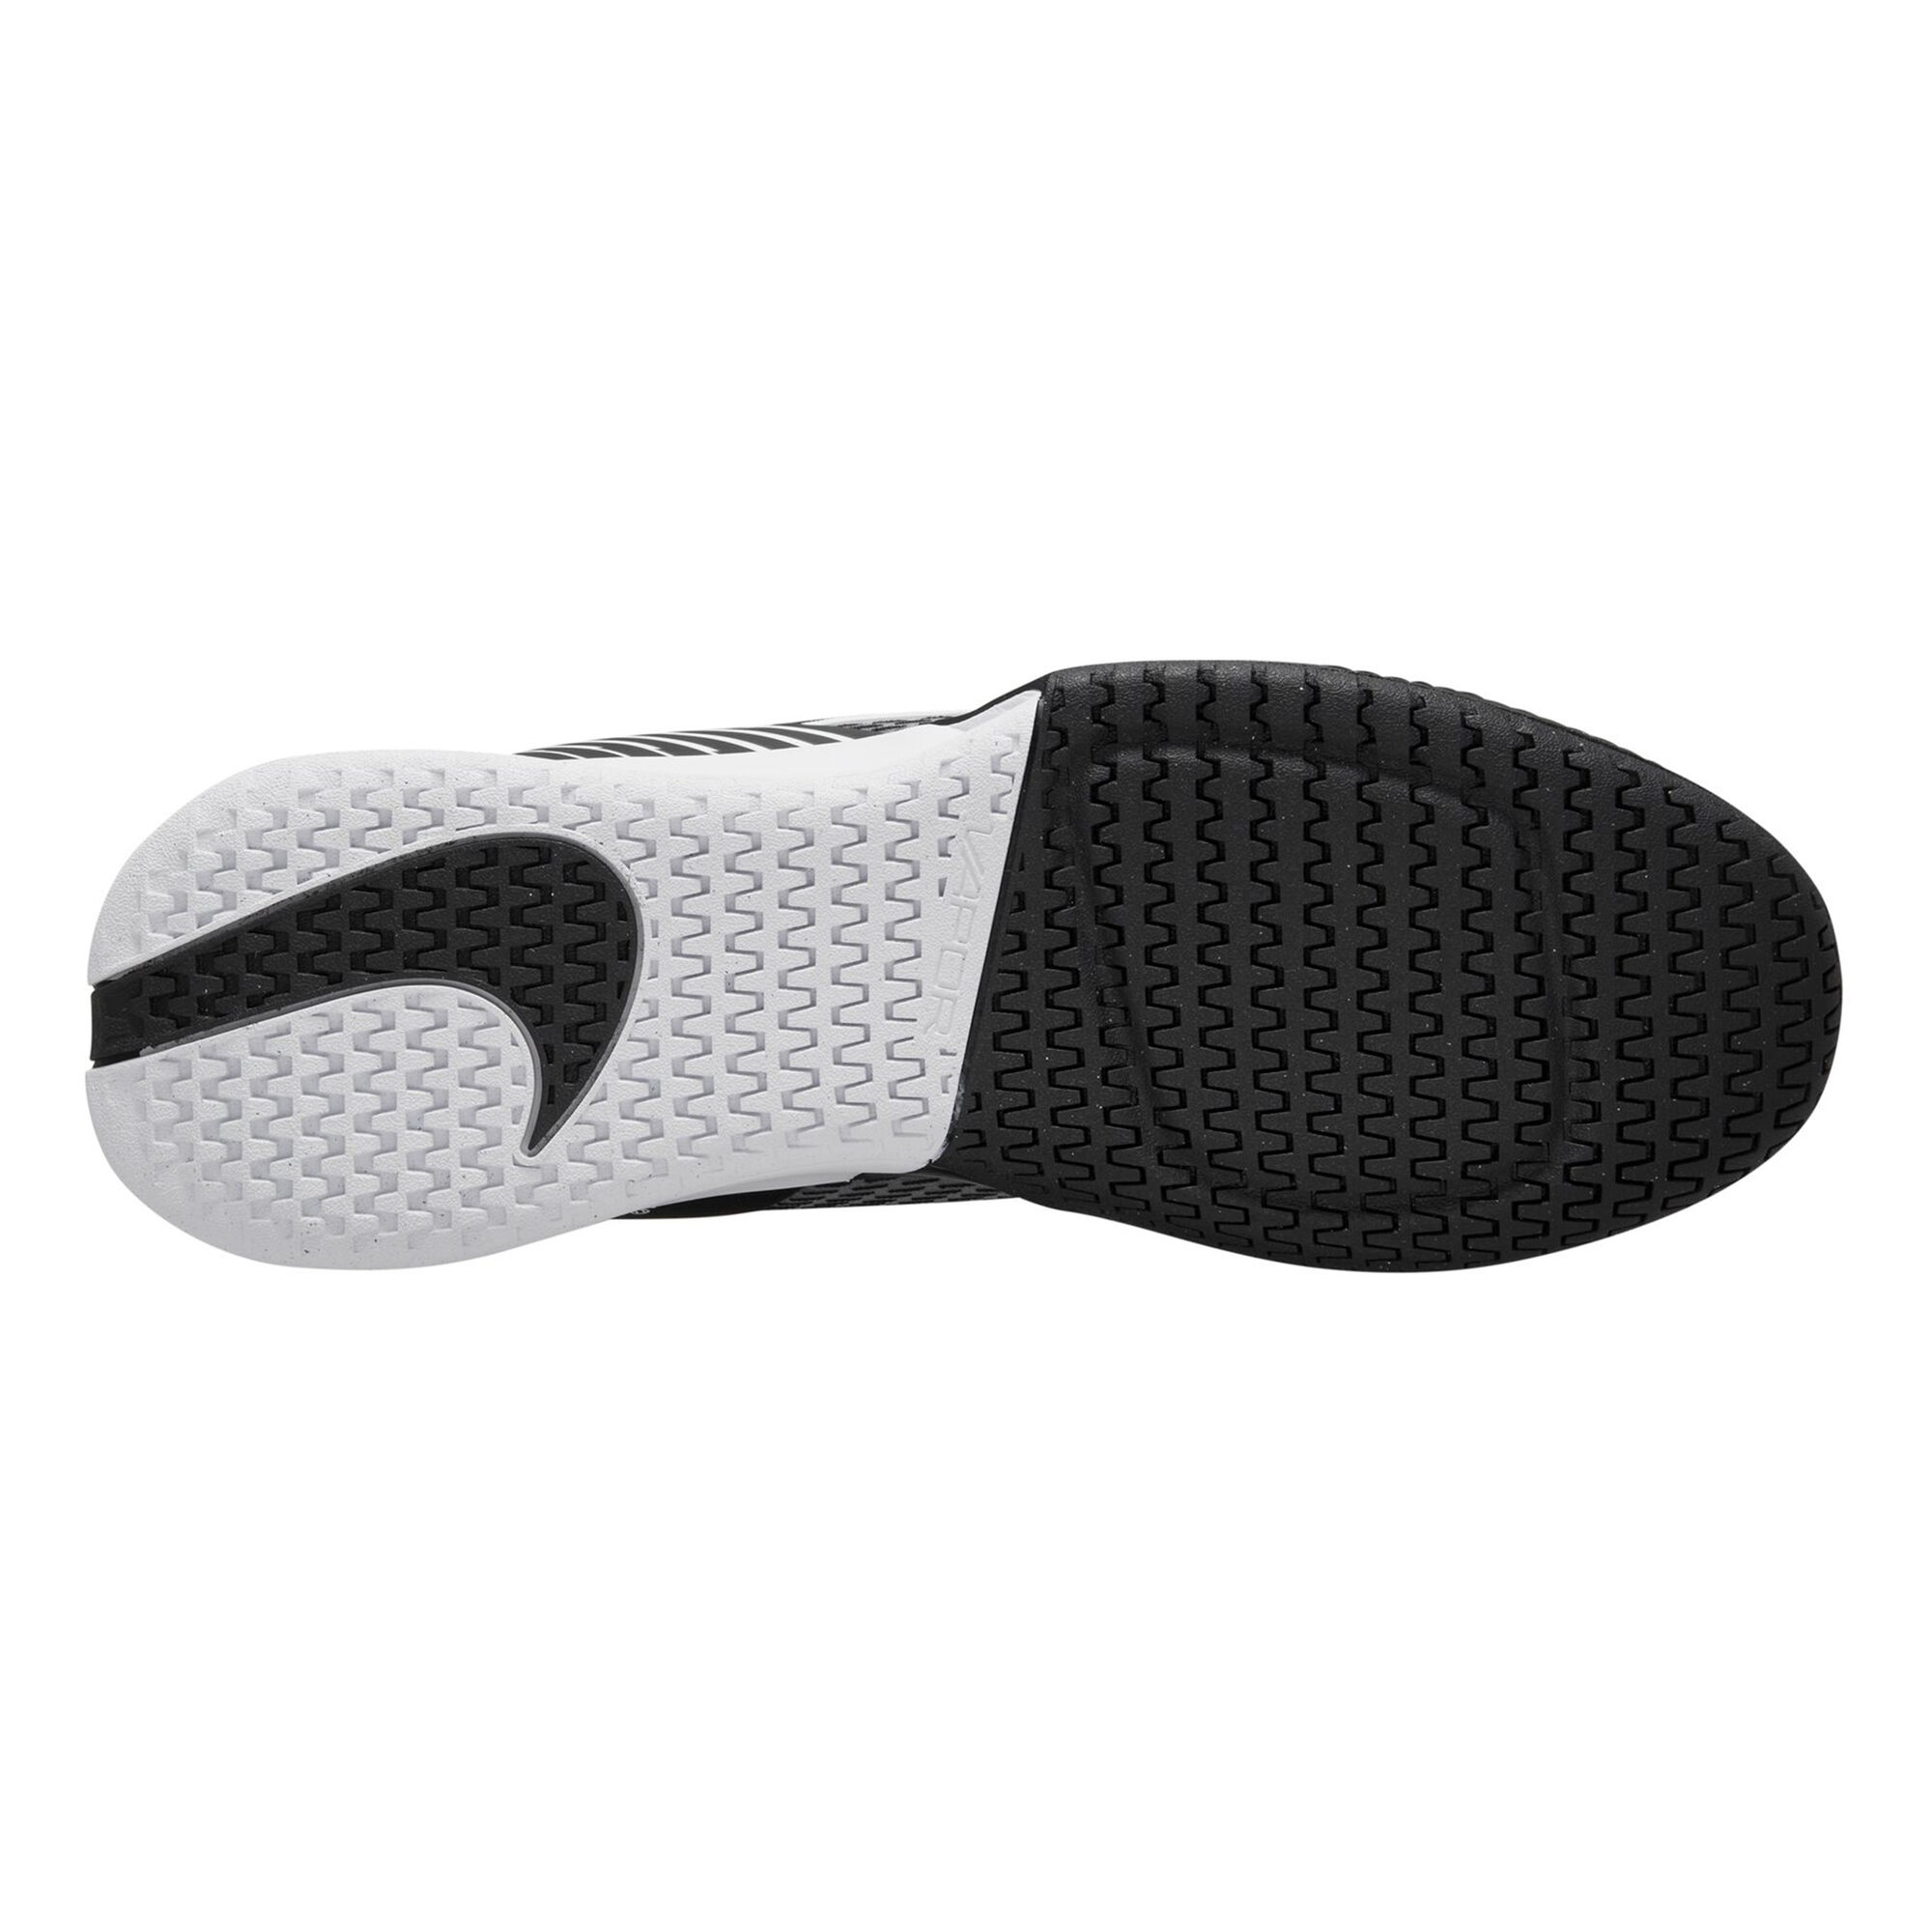 Buy Nike Air Zoom Vapor Pro 2 All Court Shoe Men Black, White